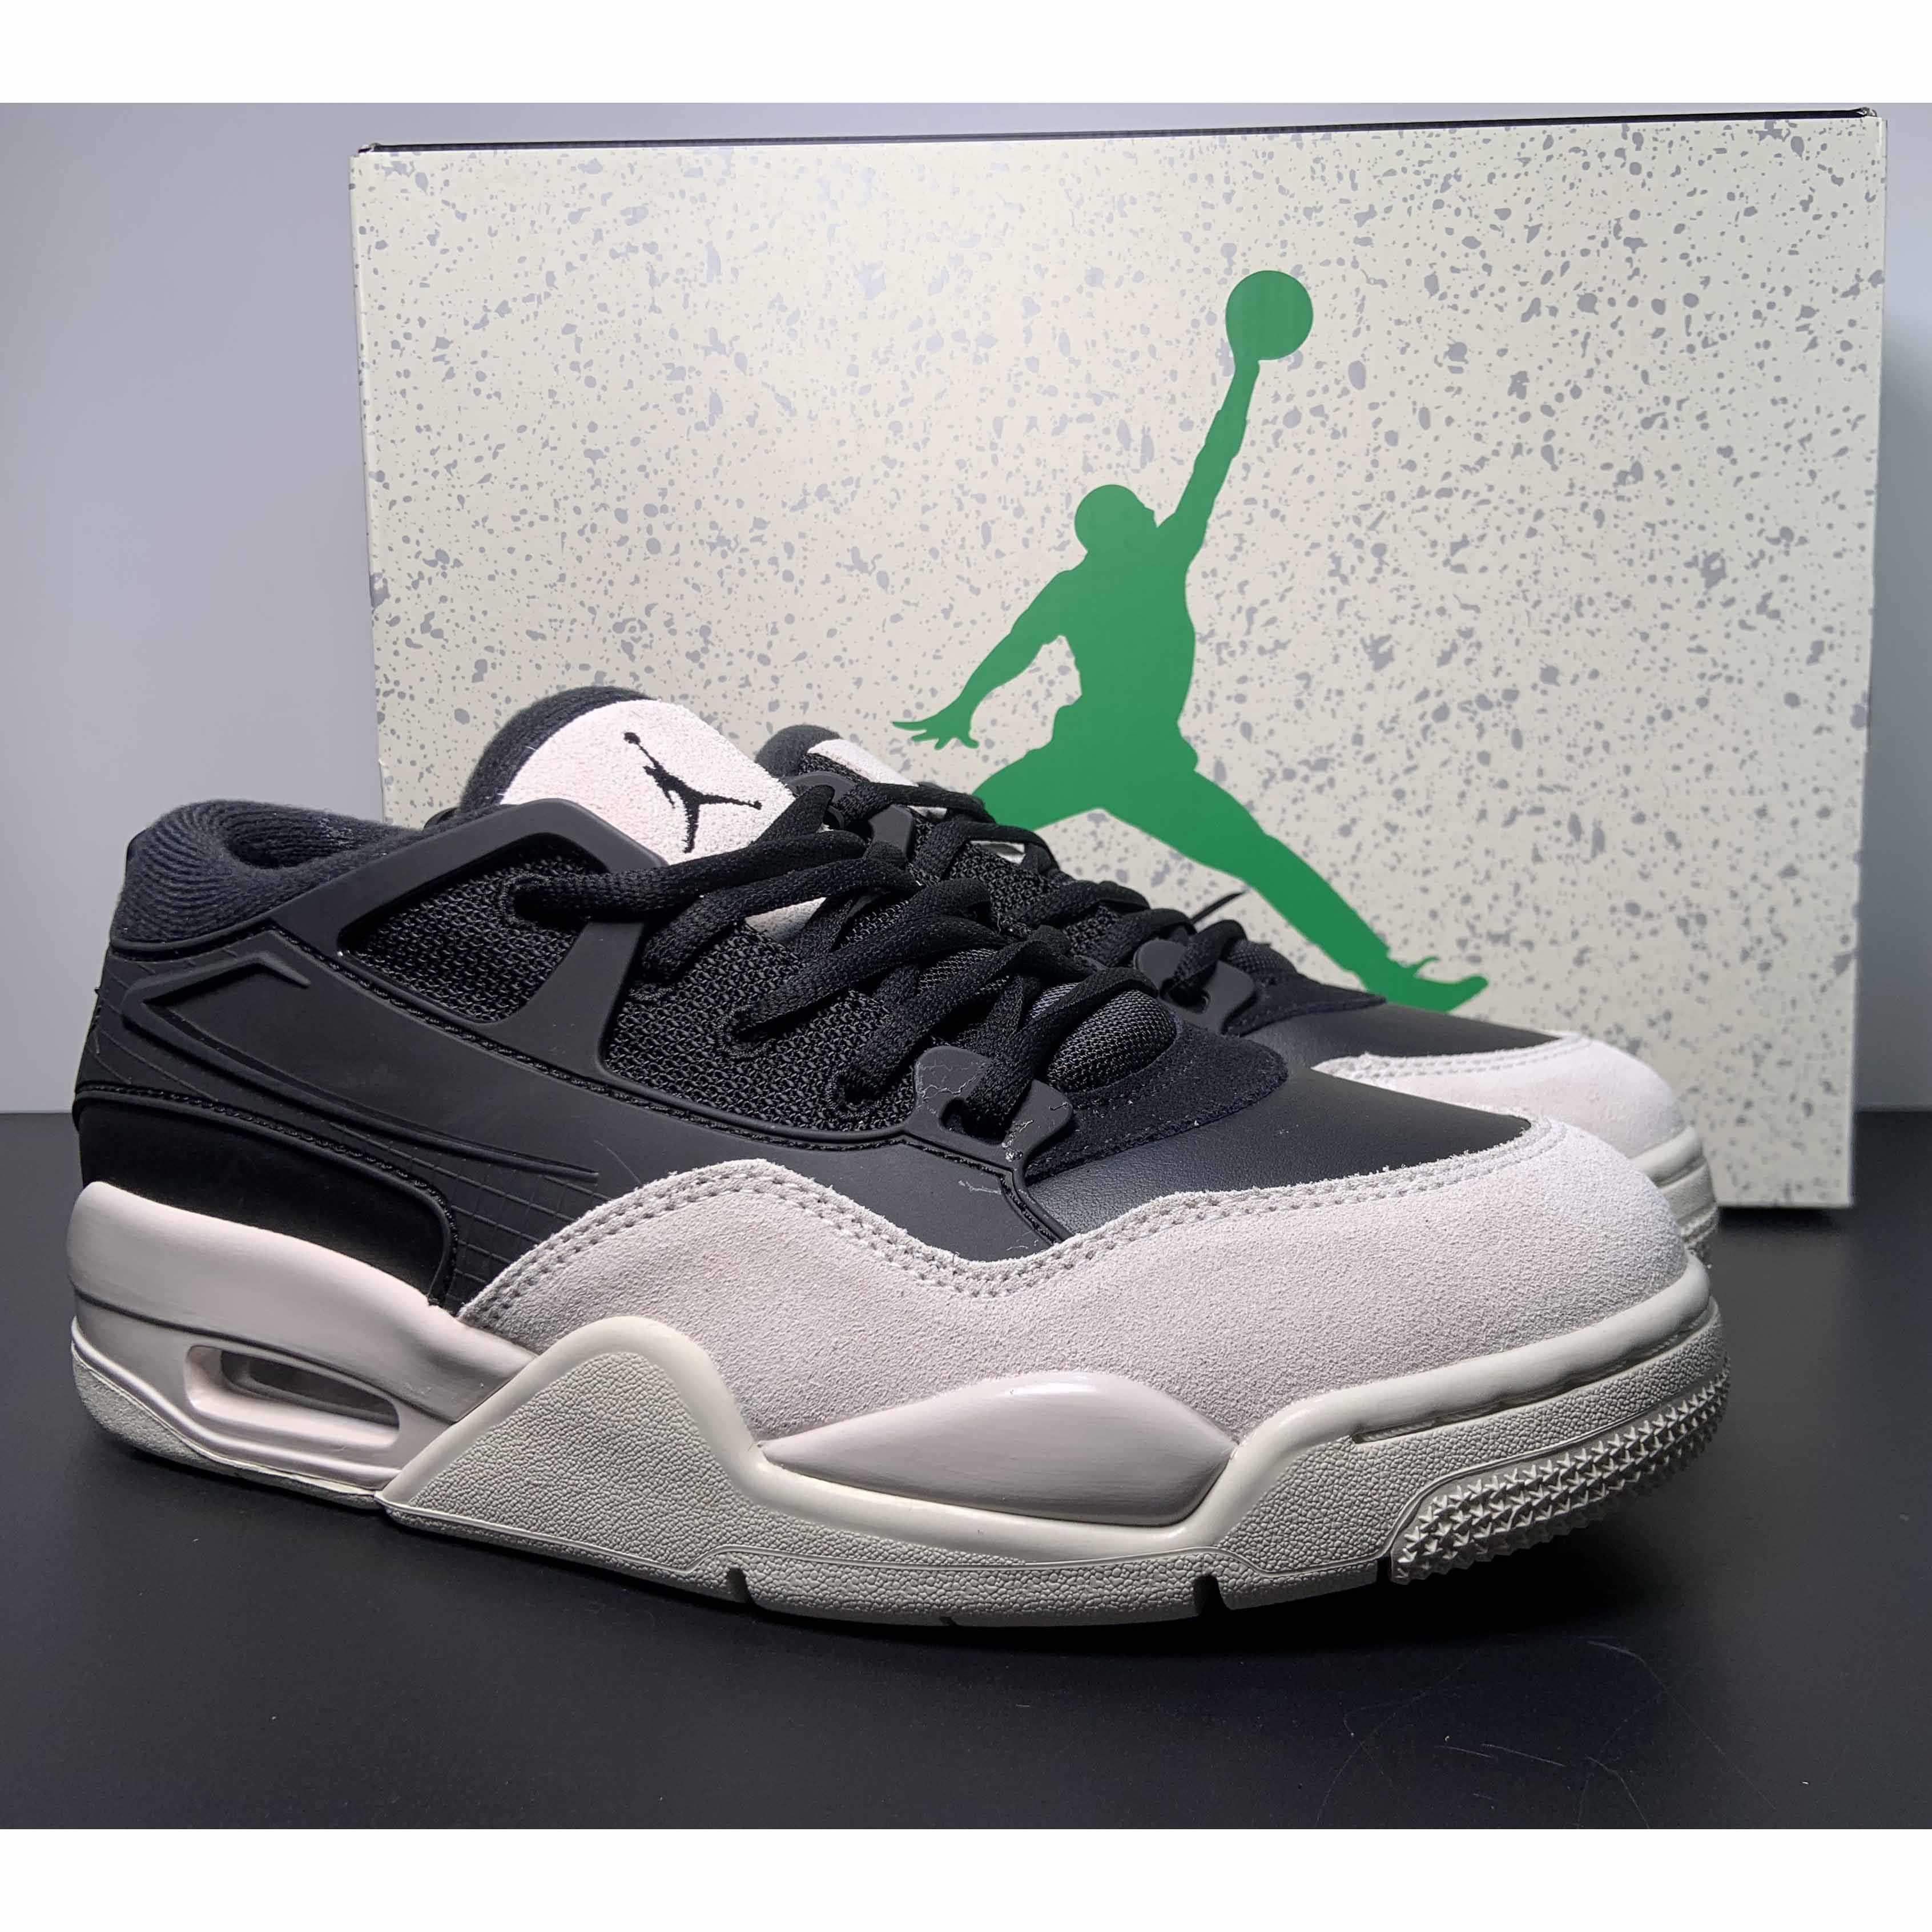 Jordan 4 Black/Light Bone-Dark Grey Sneakers     FQ7939-001 - DesignerGu